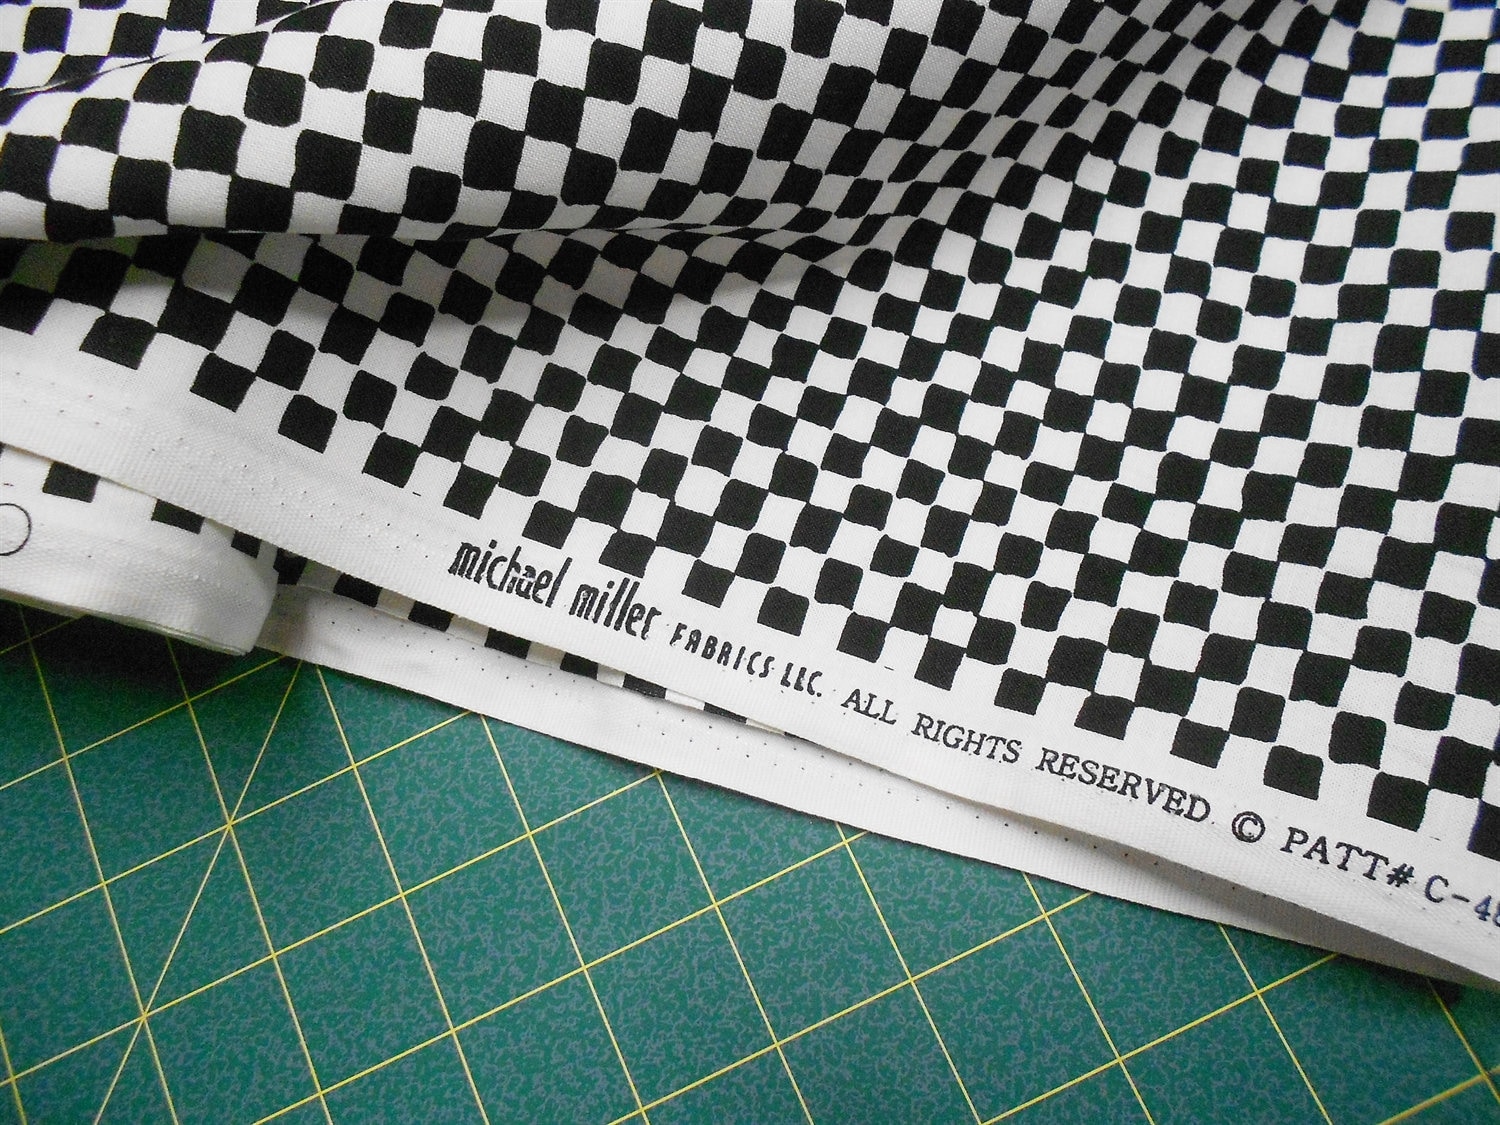 Black White Checkered 7/8 Race Car Printed Grosgrain Ribbon, Car